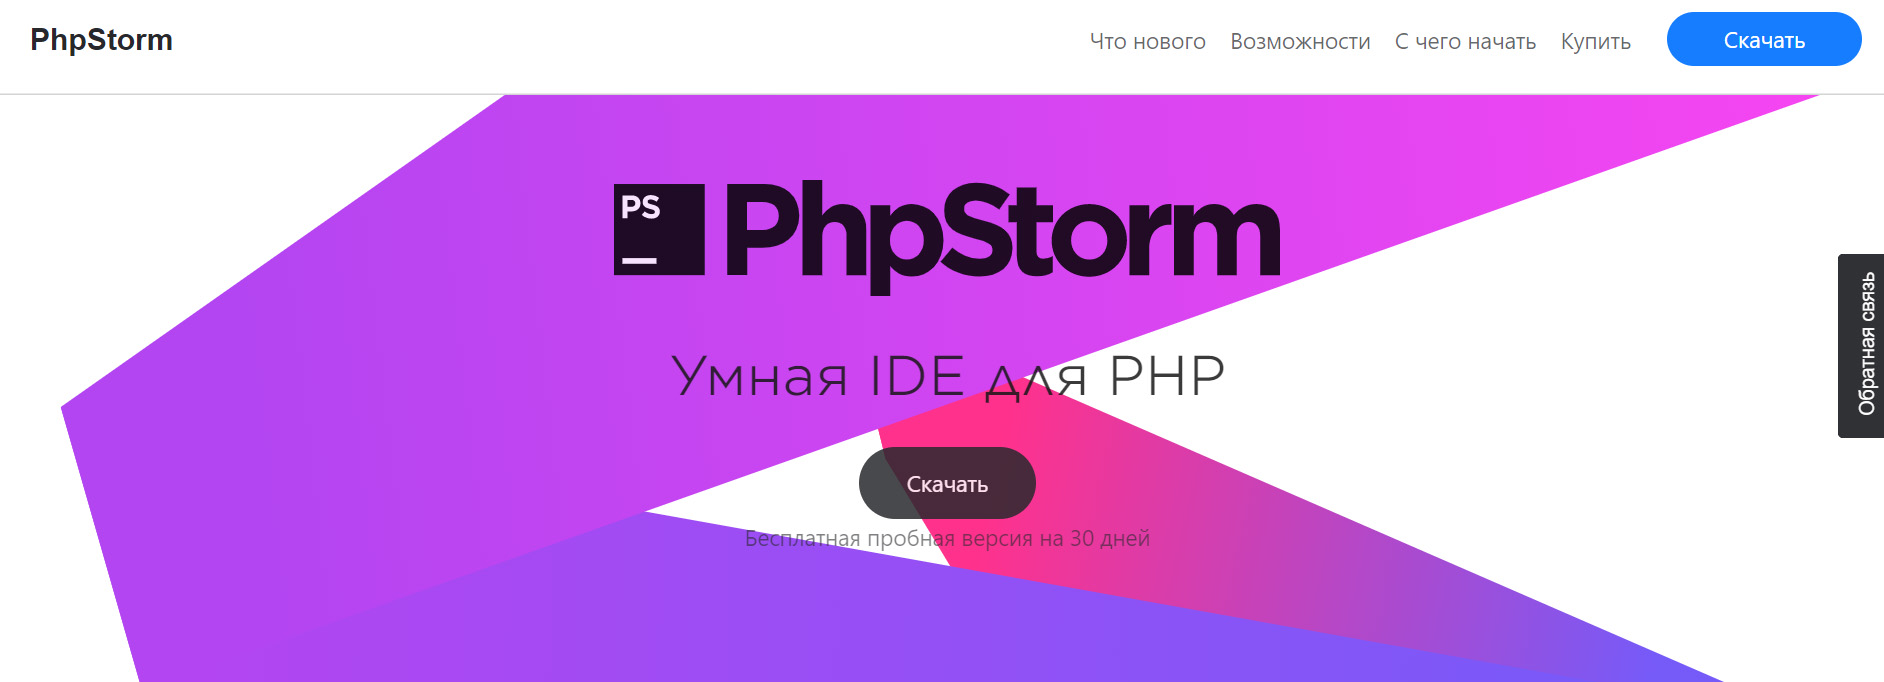 Топ инструментов профессионального разработчика: PhpStorm